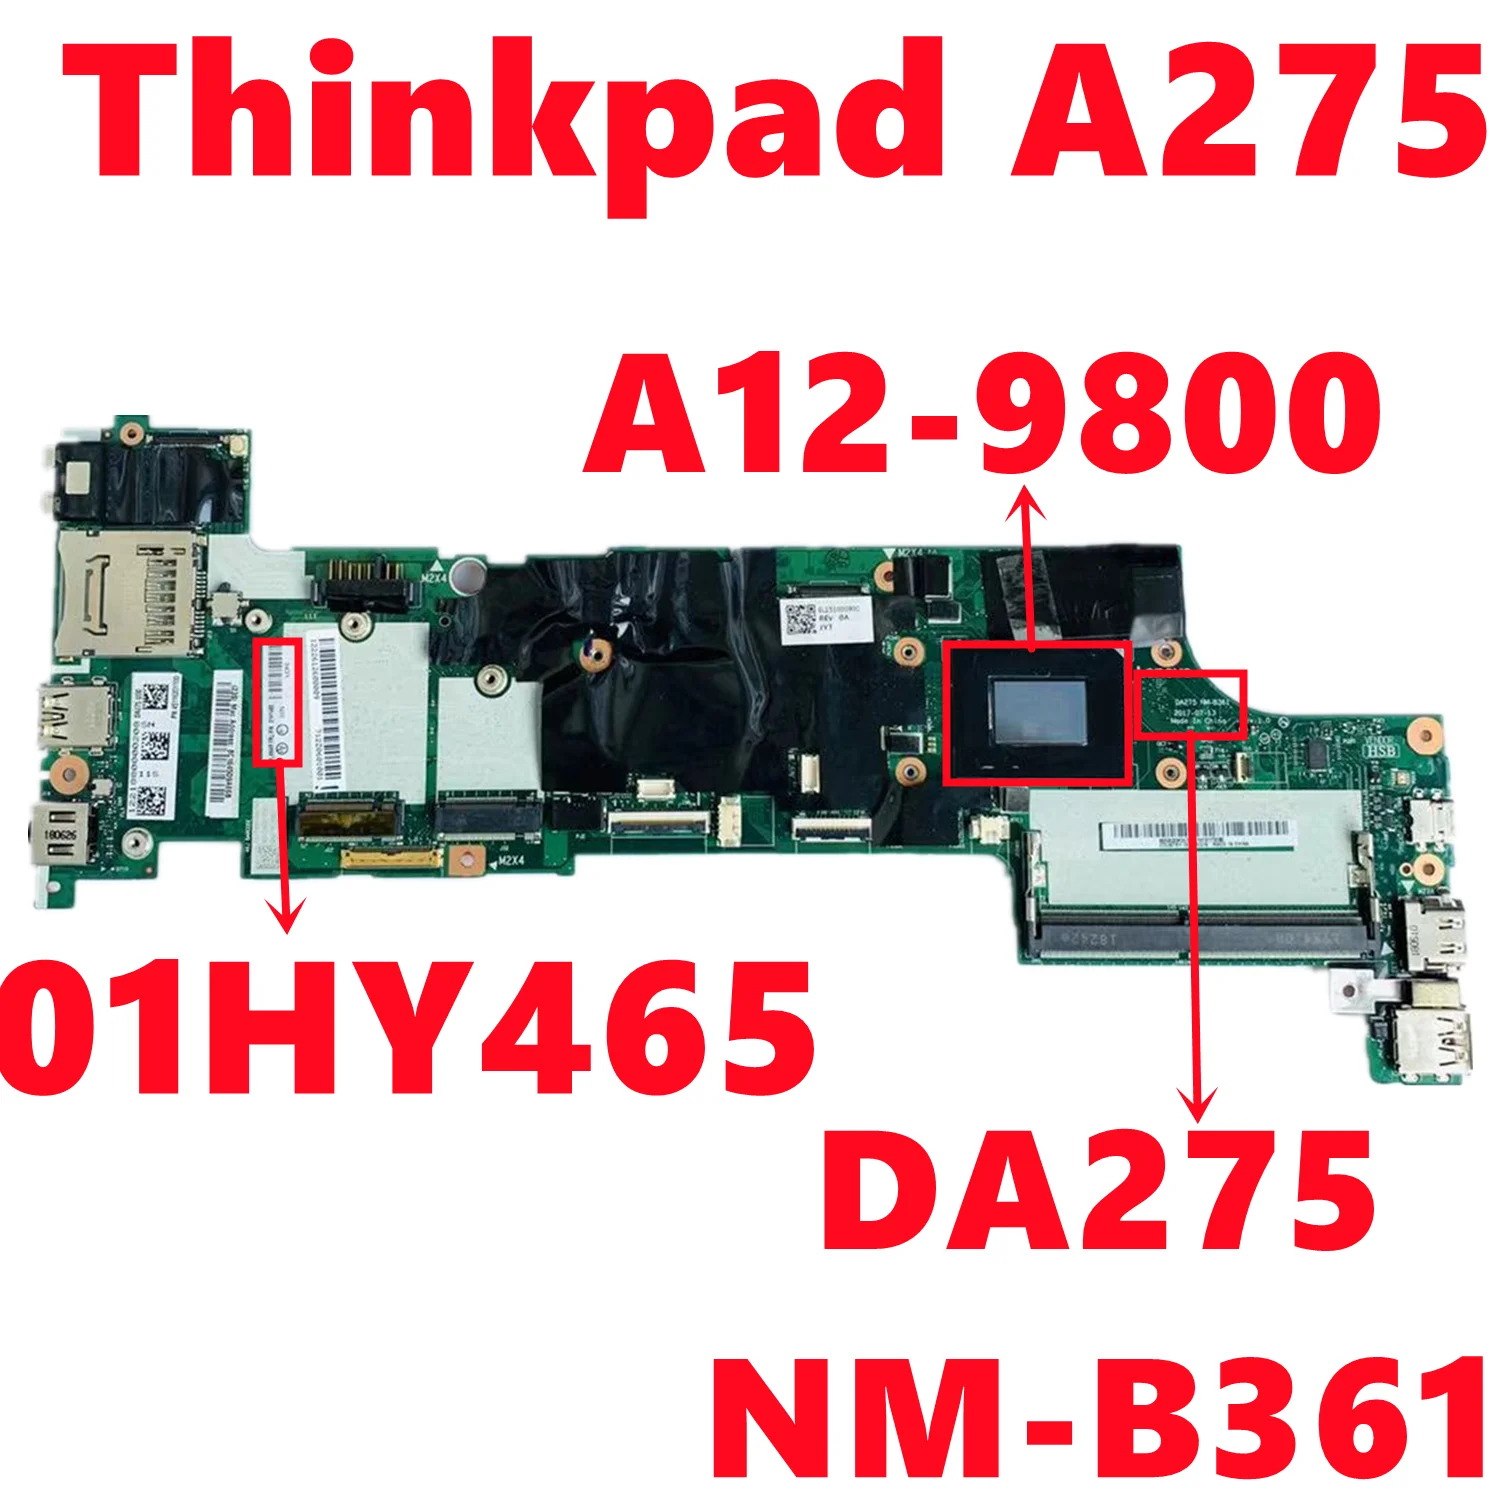 FRU: 01HY465   Lenovo Thinkpad A275,   DA275 NM-B361,     AMD A12-9800 DDR4 100%,  